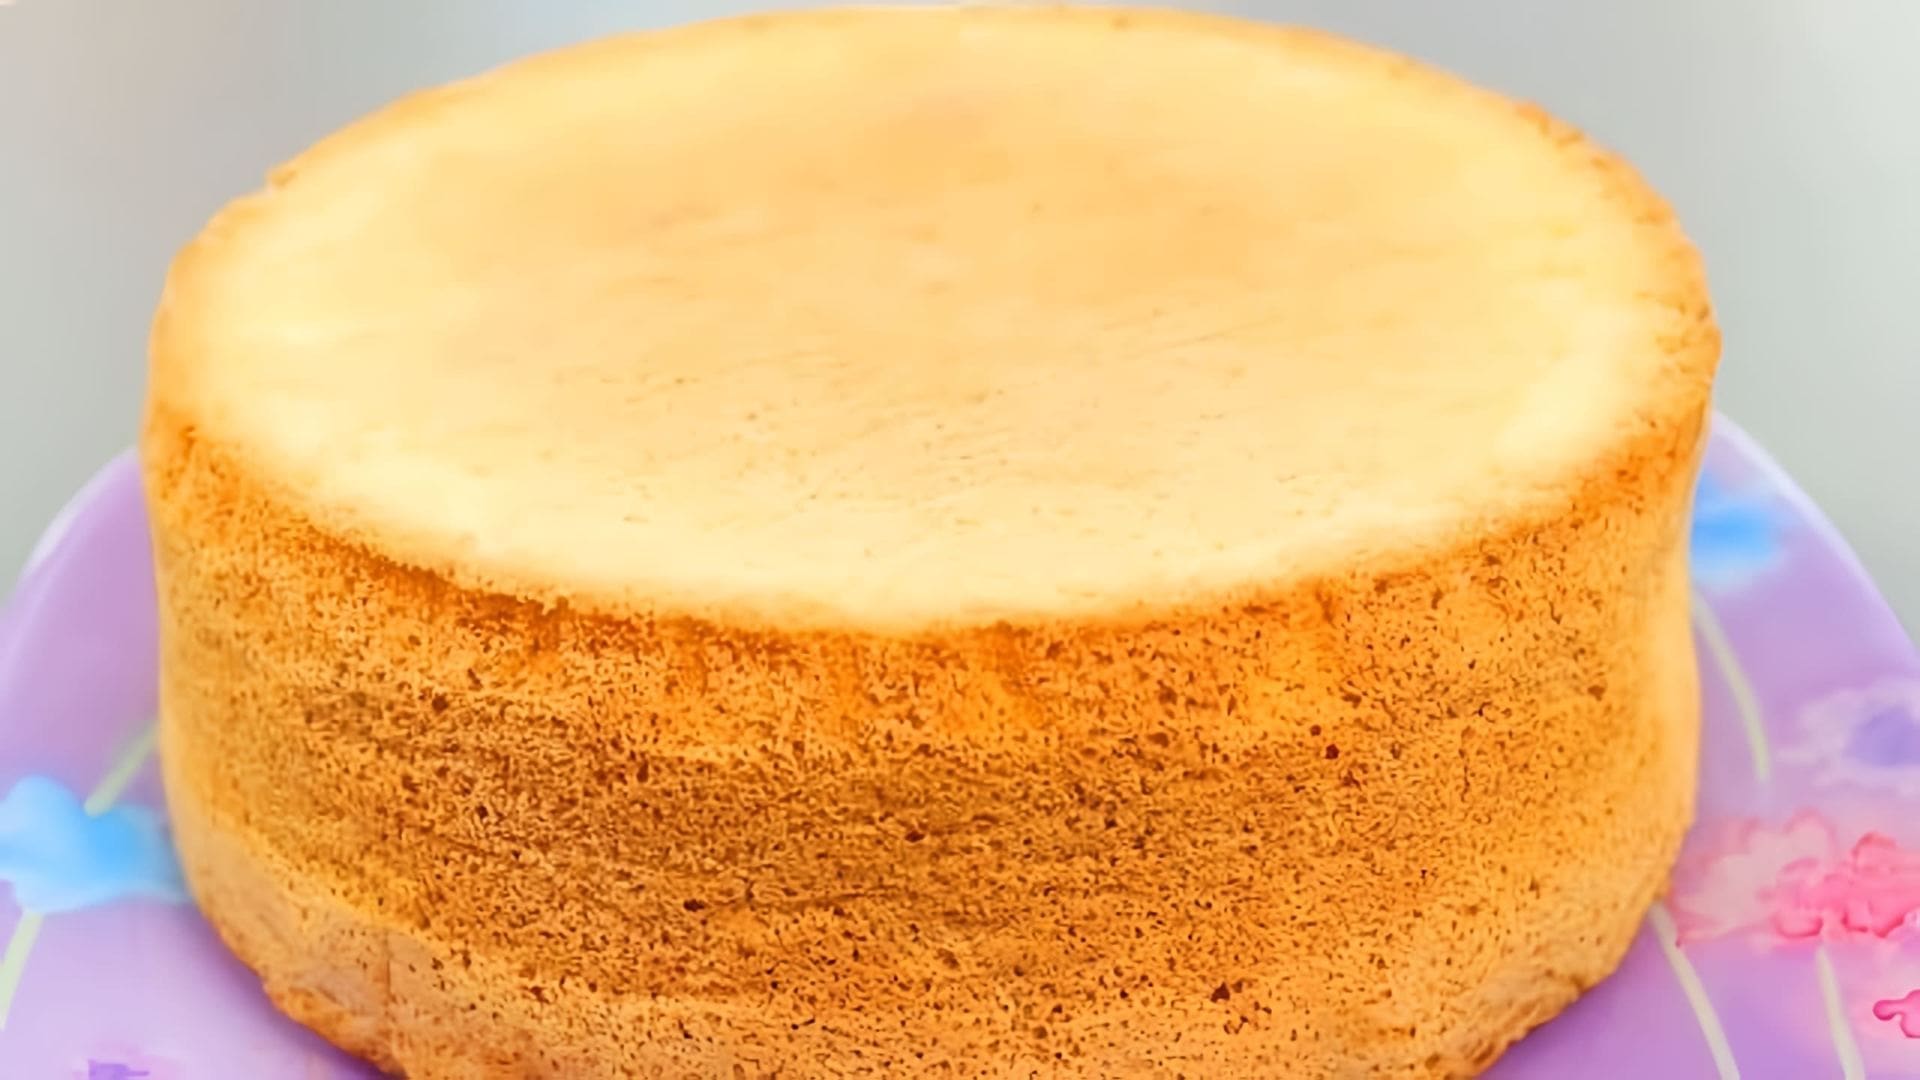 В этом видео демонстрируется простой и эффективный рецепт приготовления пышного бисквита